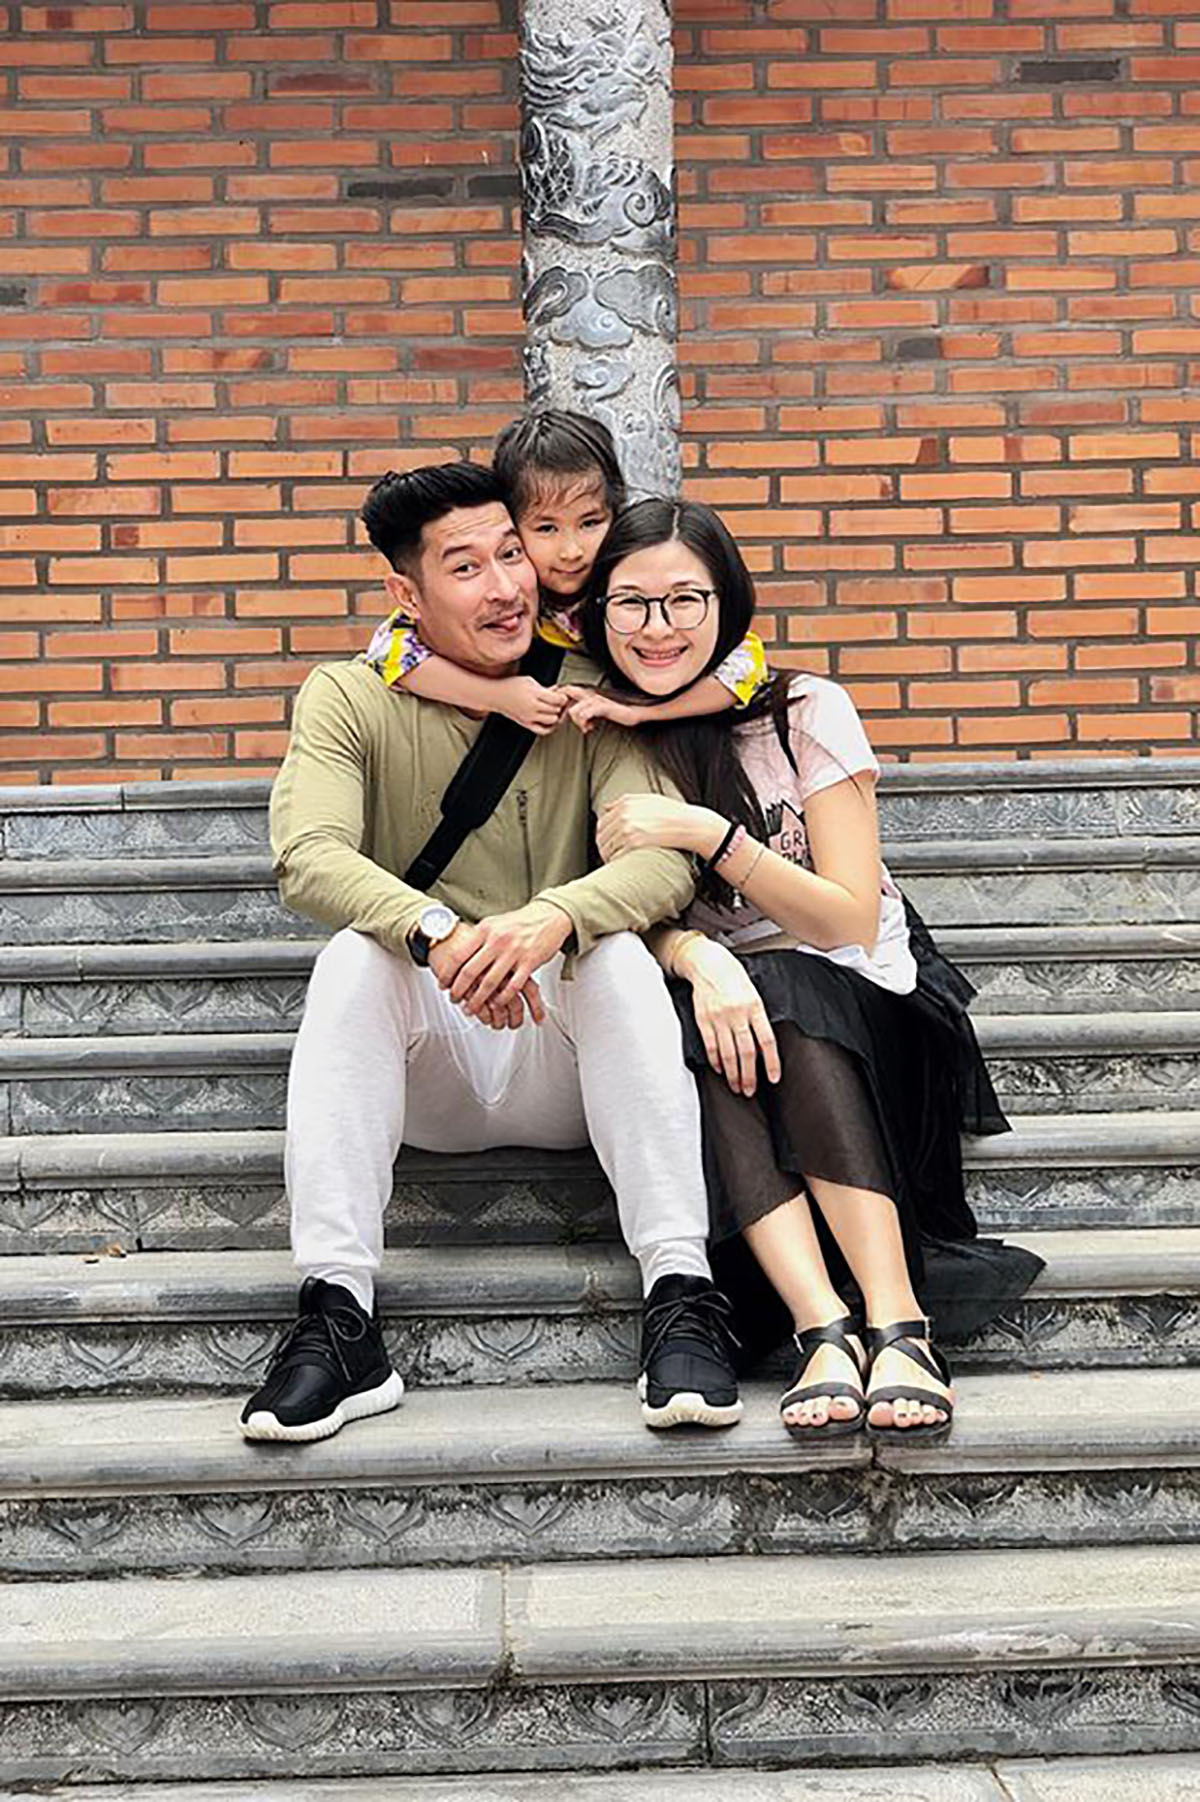 Huy Khánh: 'Tiền tổ chức đám cưới thà để nuôi con'